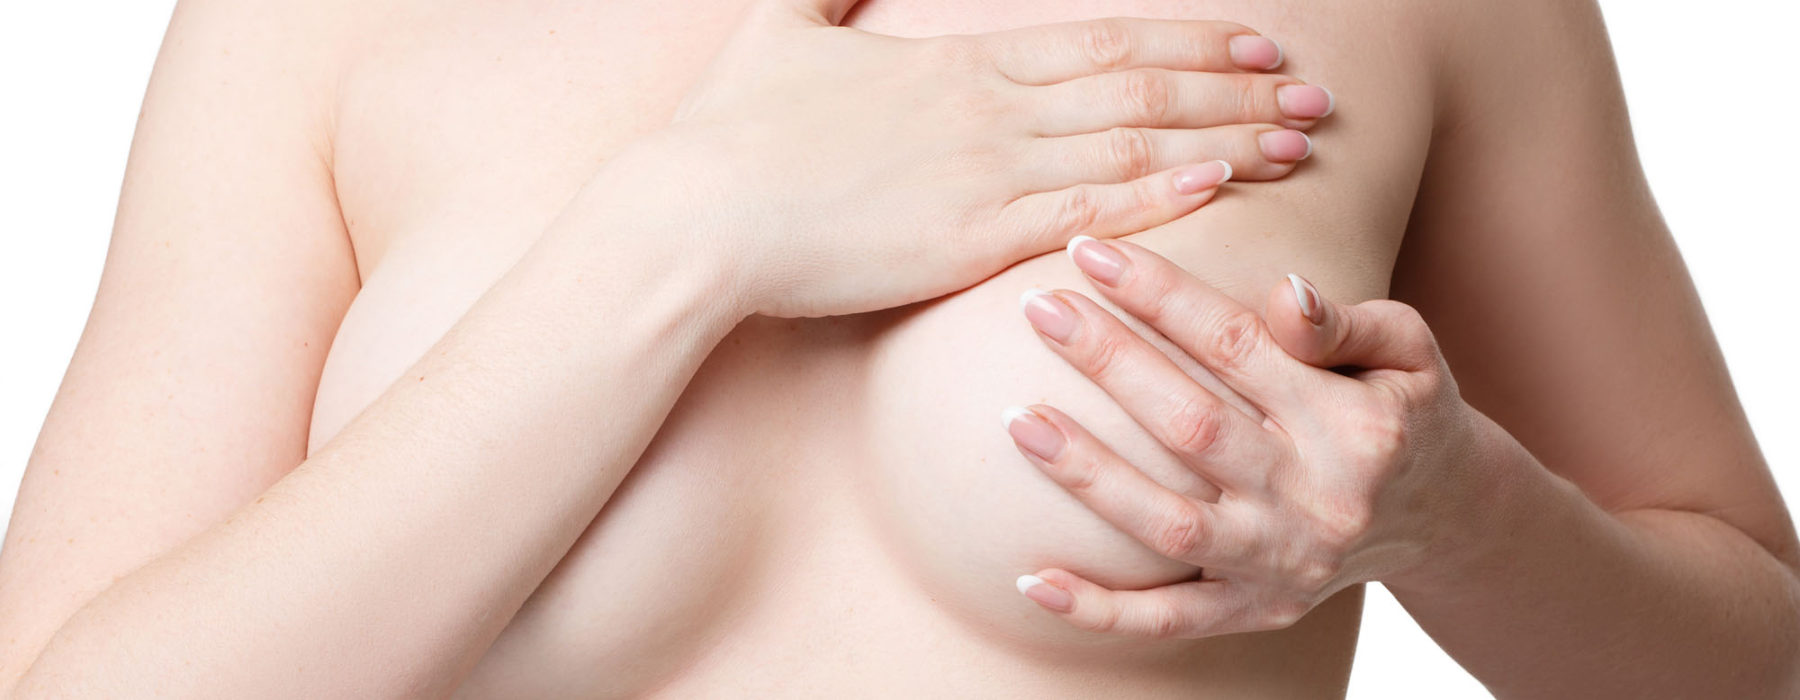 массаж груди во время беременности фото 32